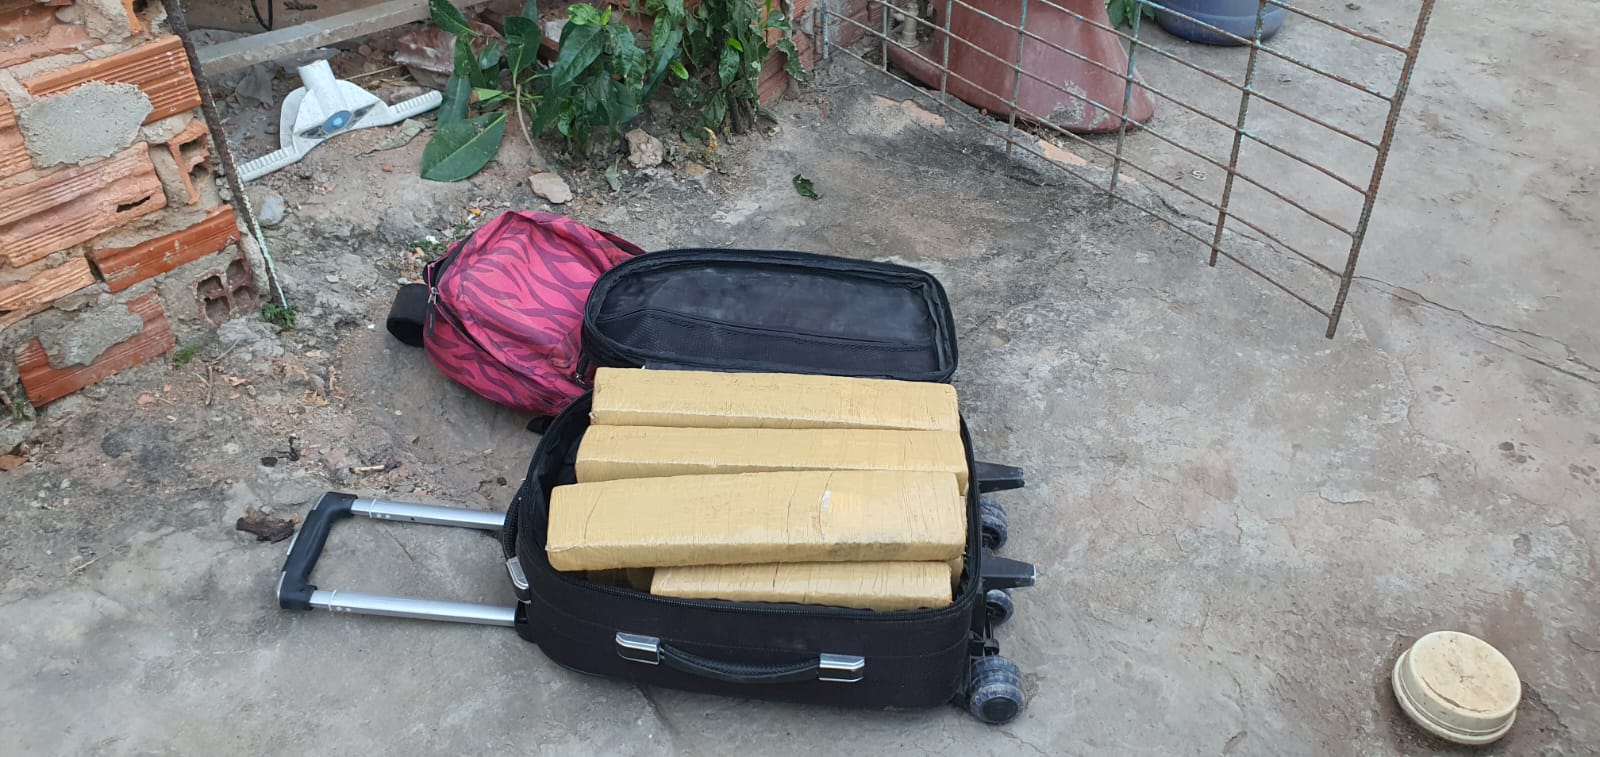 Trio é preso em flagrante em Cuiabá, com 19 tabletes de maconha